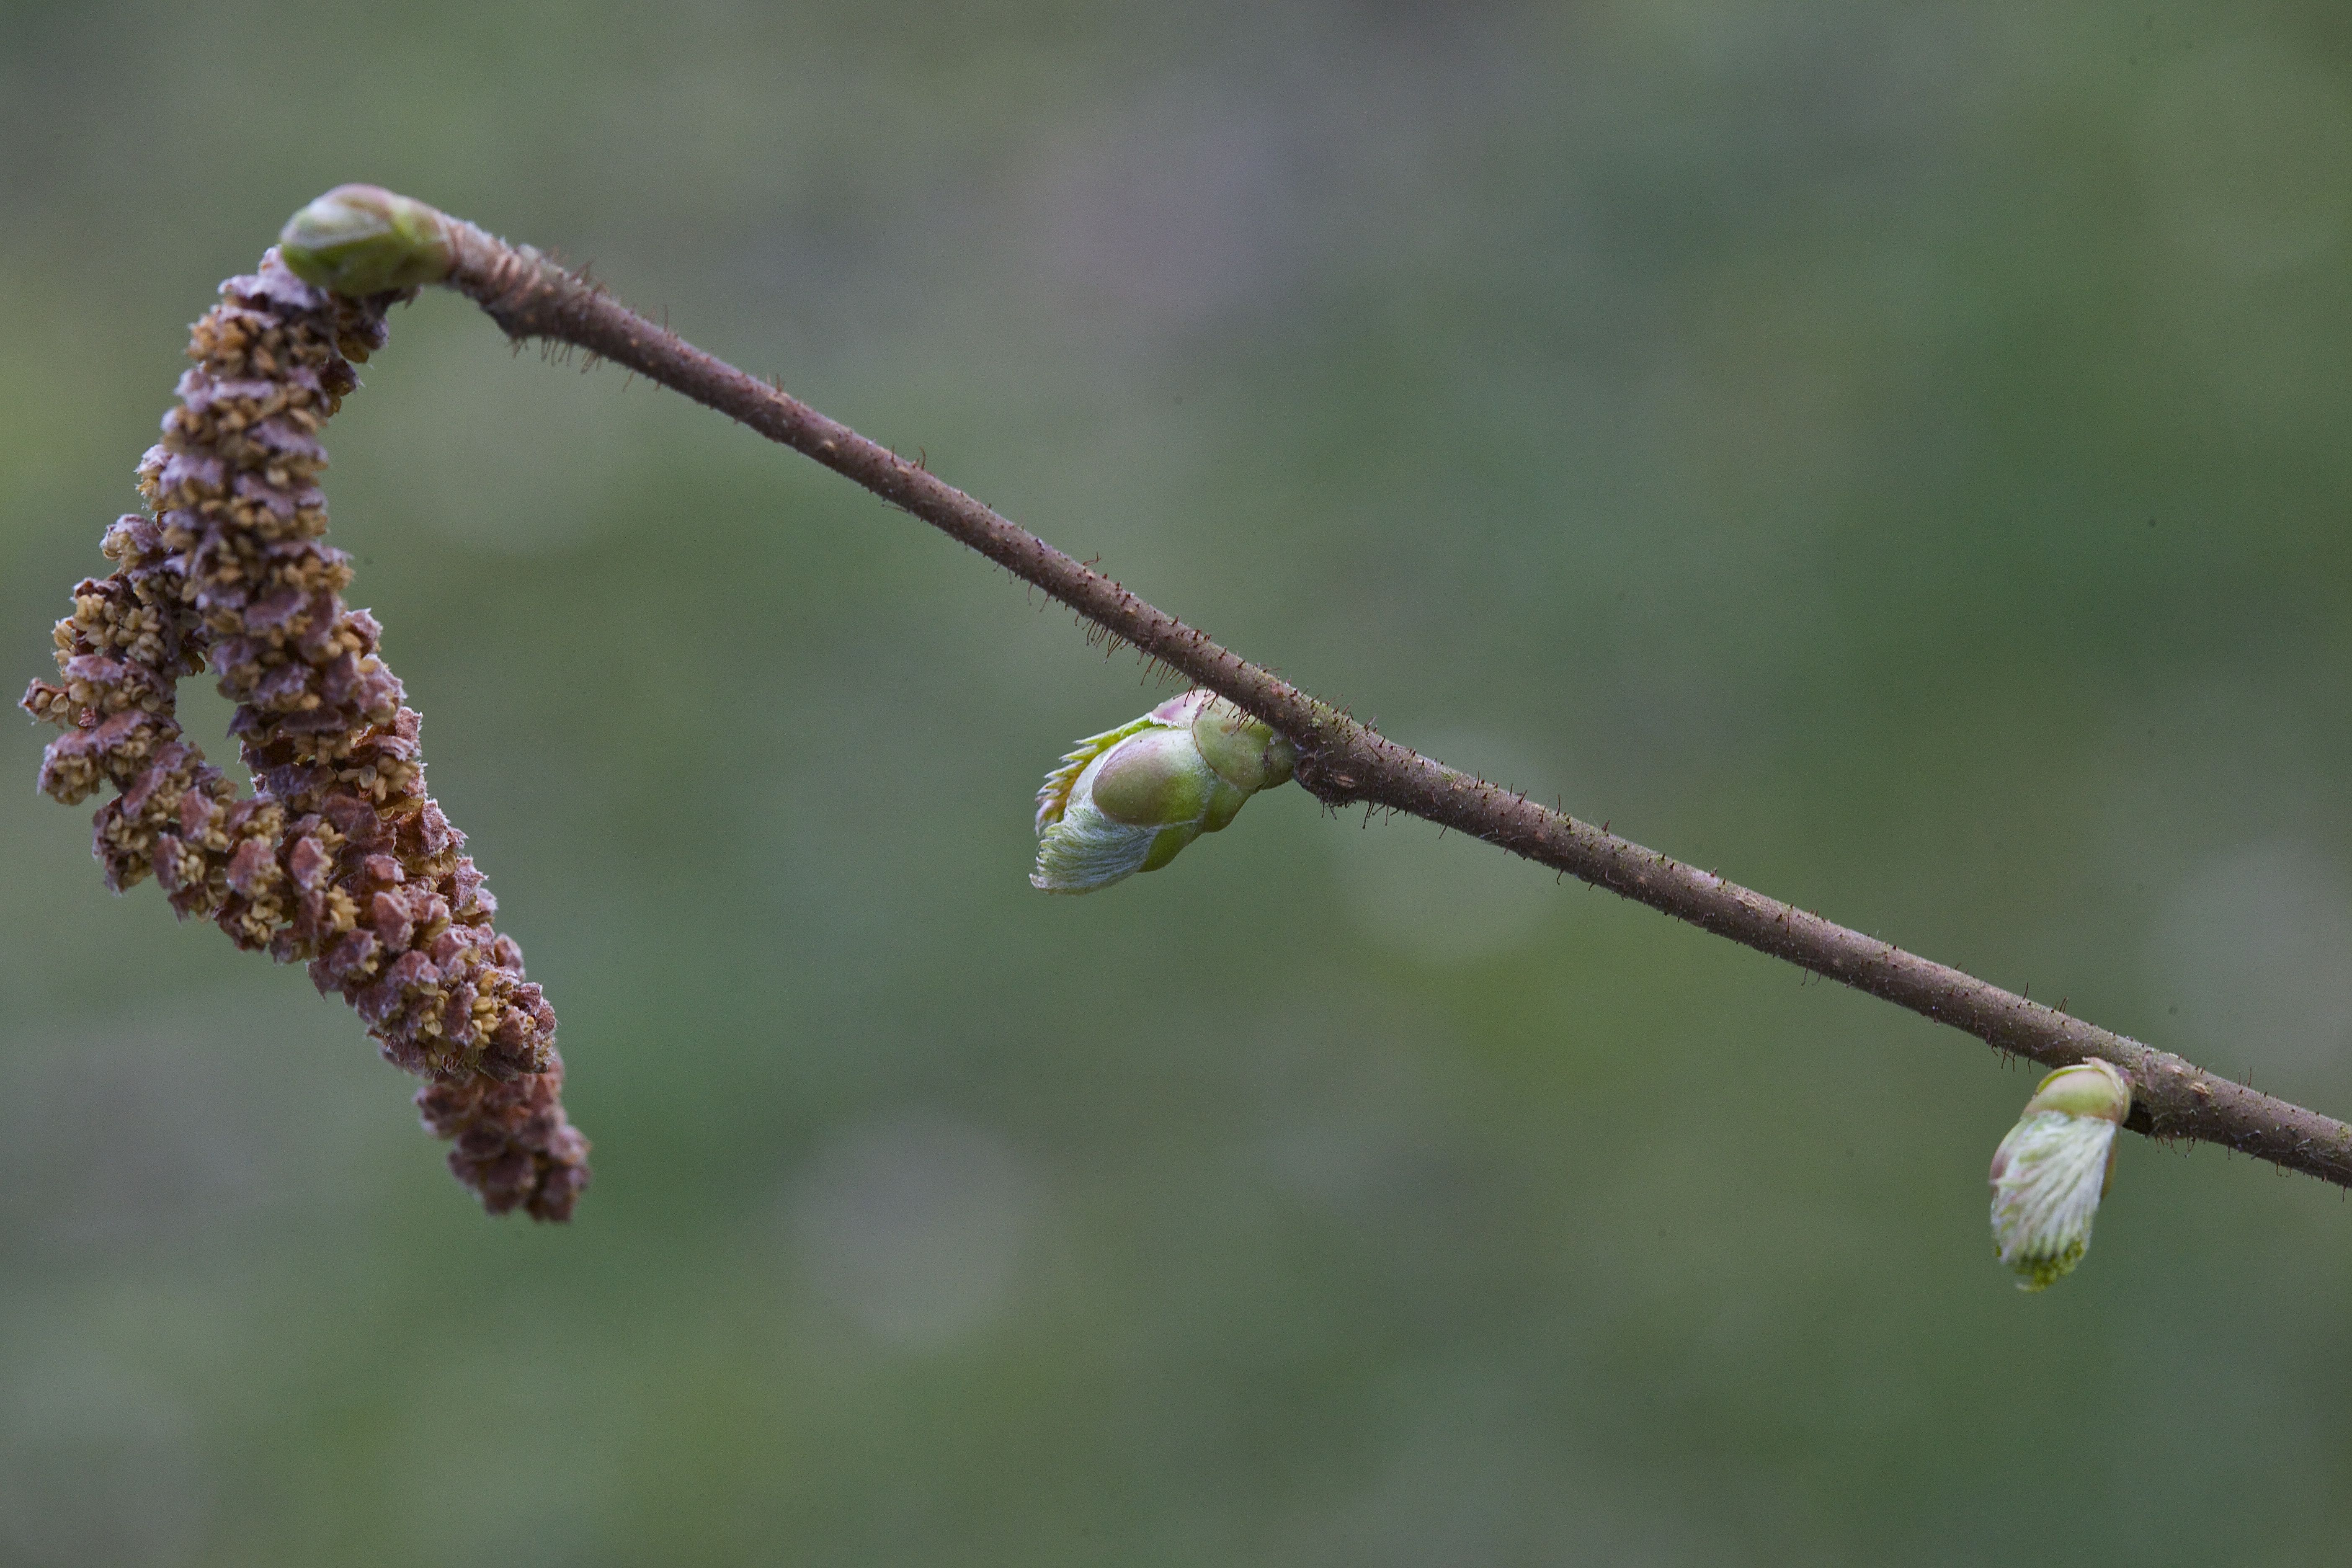 Как цветет орешник лещина весной фото